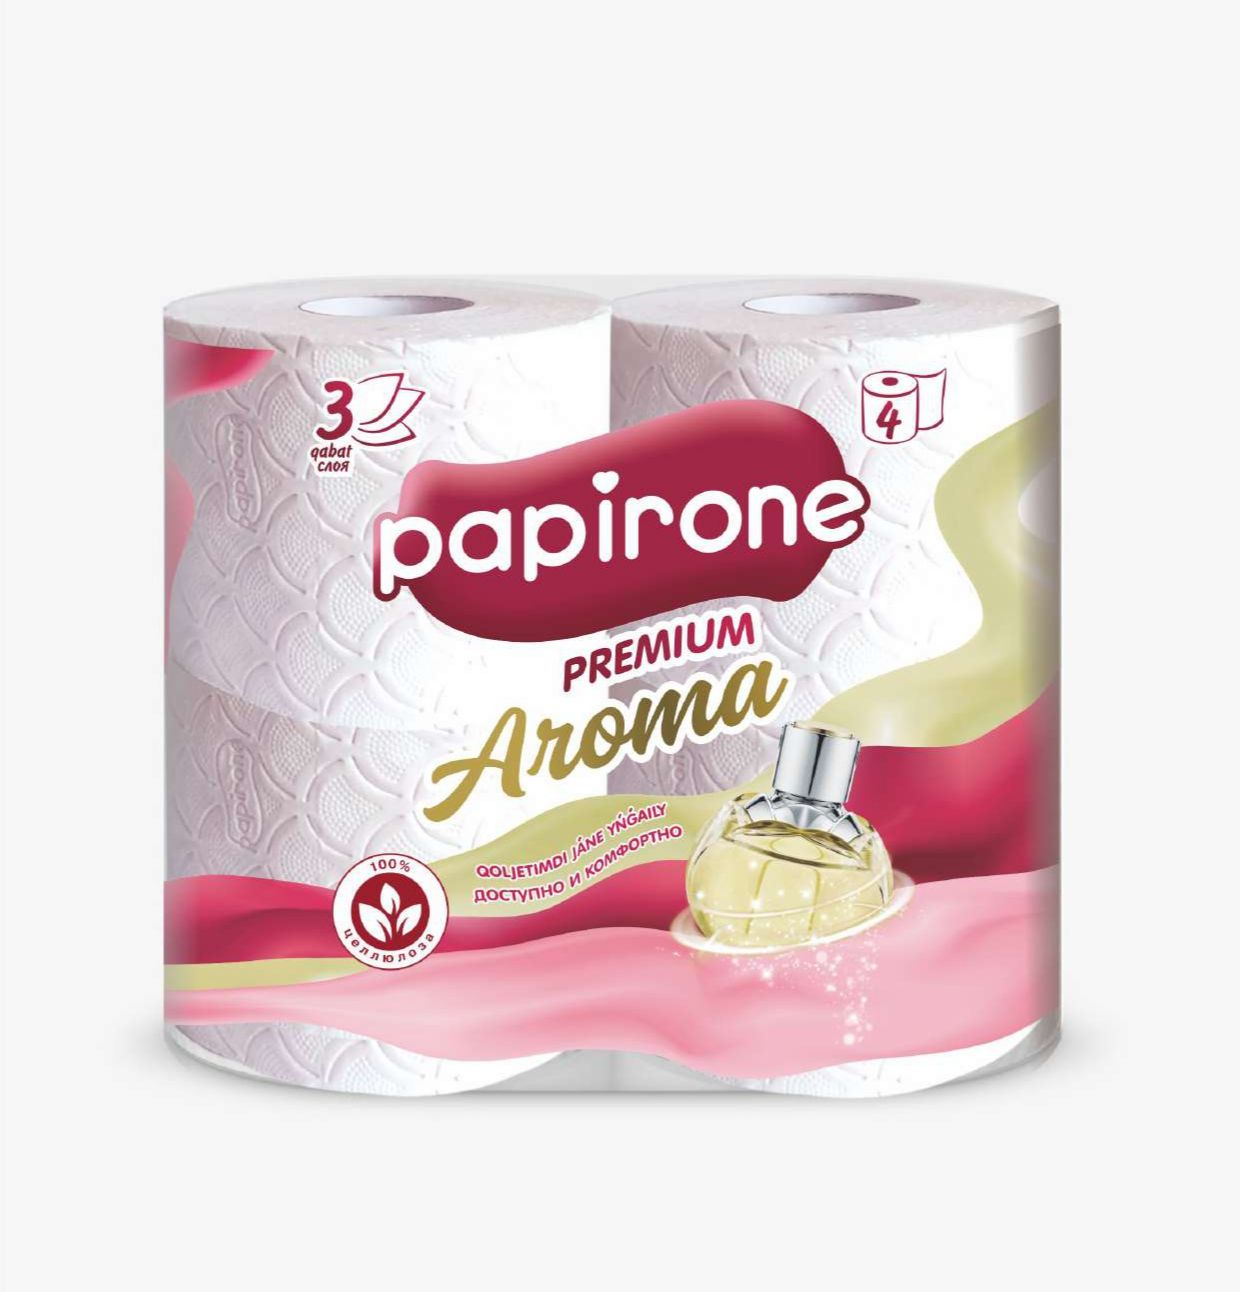 Туалетная бумага Papirone, трехслойная, 4 рулона туалетная бумага soffione premio natural трехслойная белая 12 рулонов